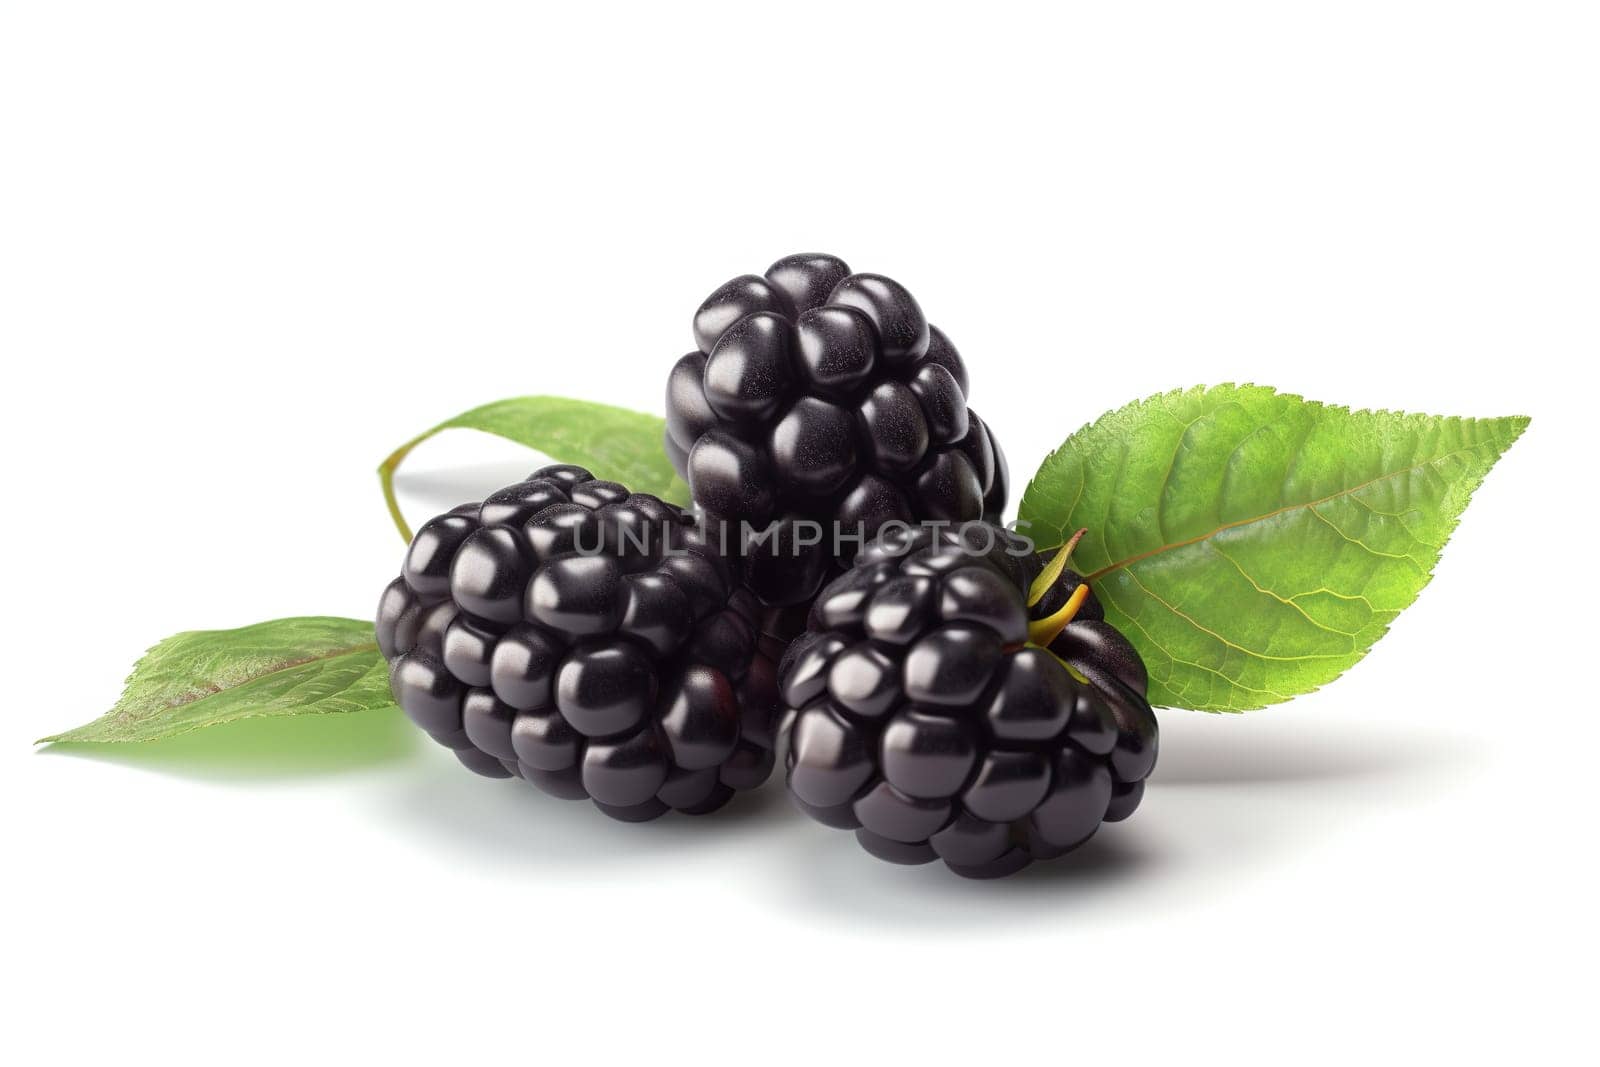 Black raspberries with stem by GekaSkr